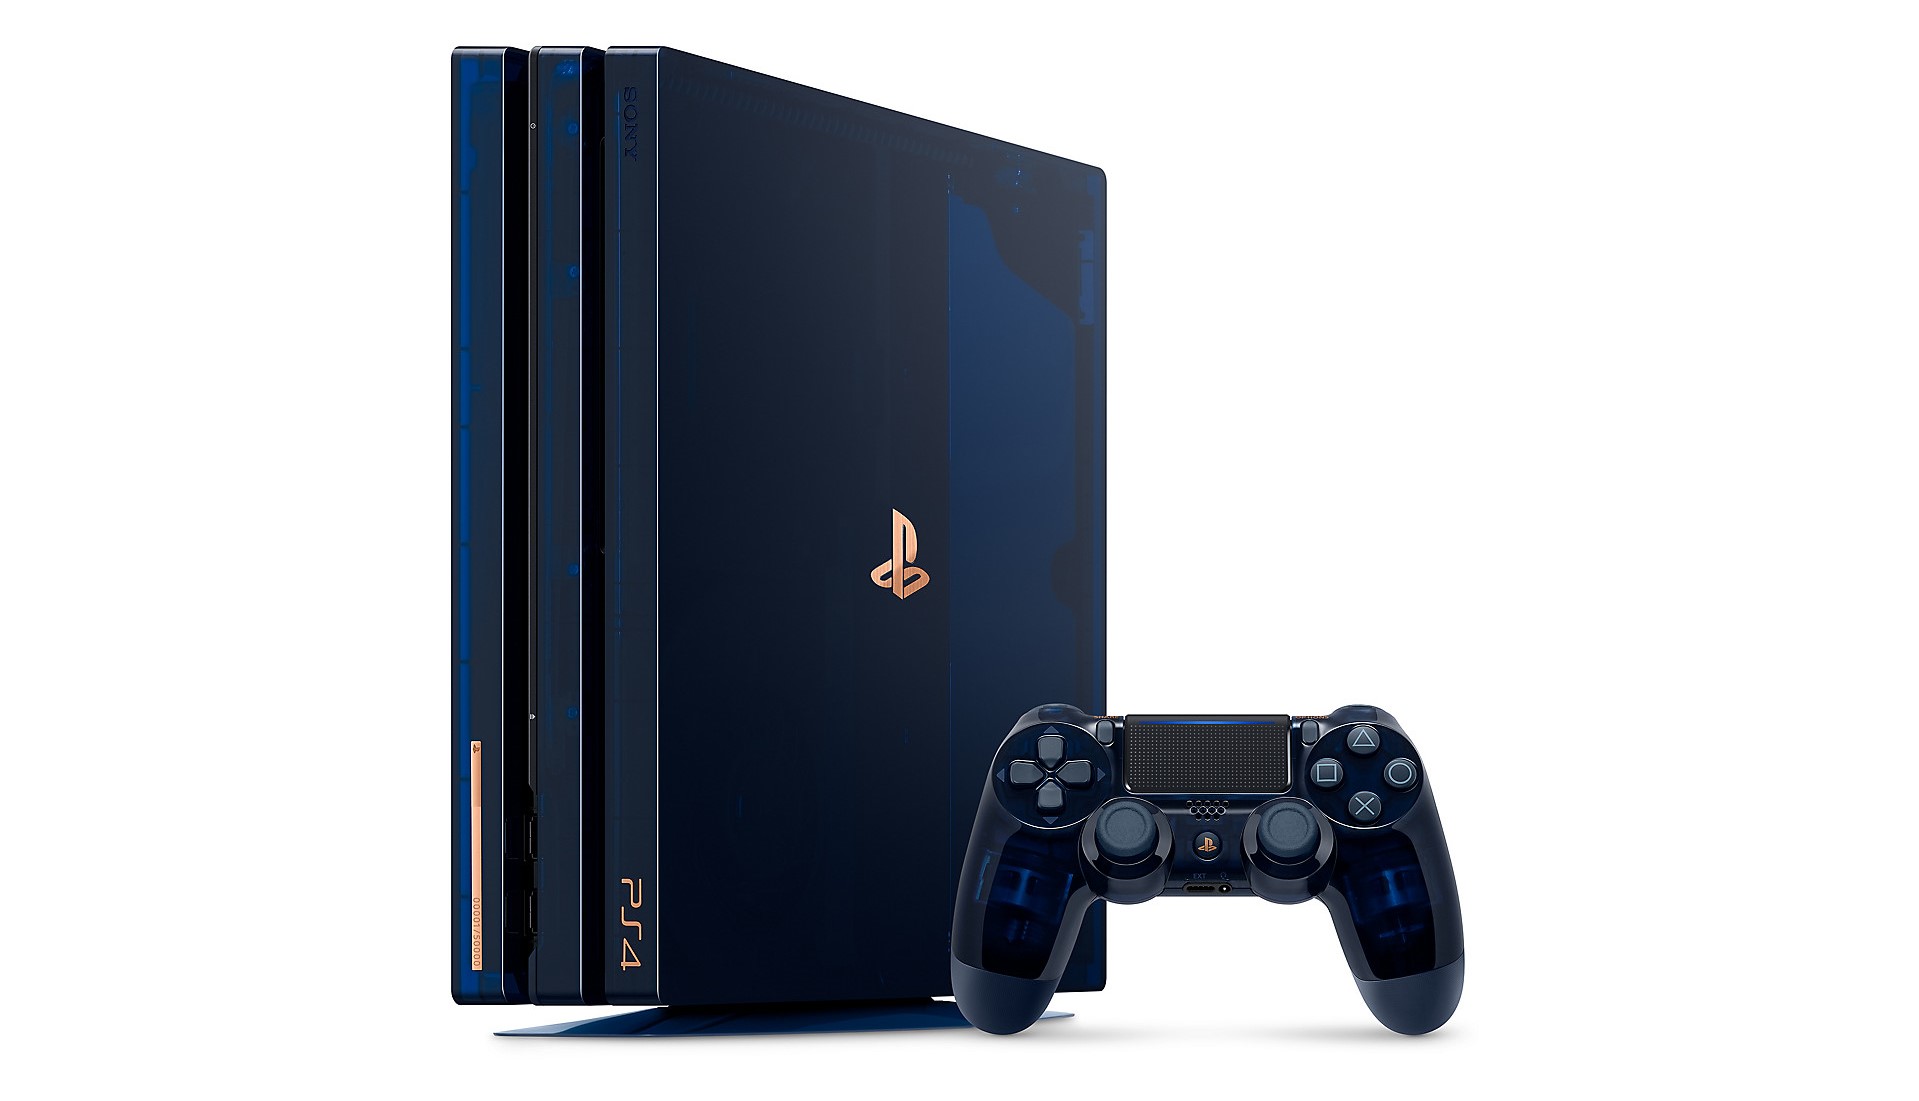 Продажи PlayStation достигли 500-миллионной отметки. Sony выпустит лимитированную версию PS4 Pro в прозрачном корпусе с накопителем объемом 2 ТБ